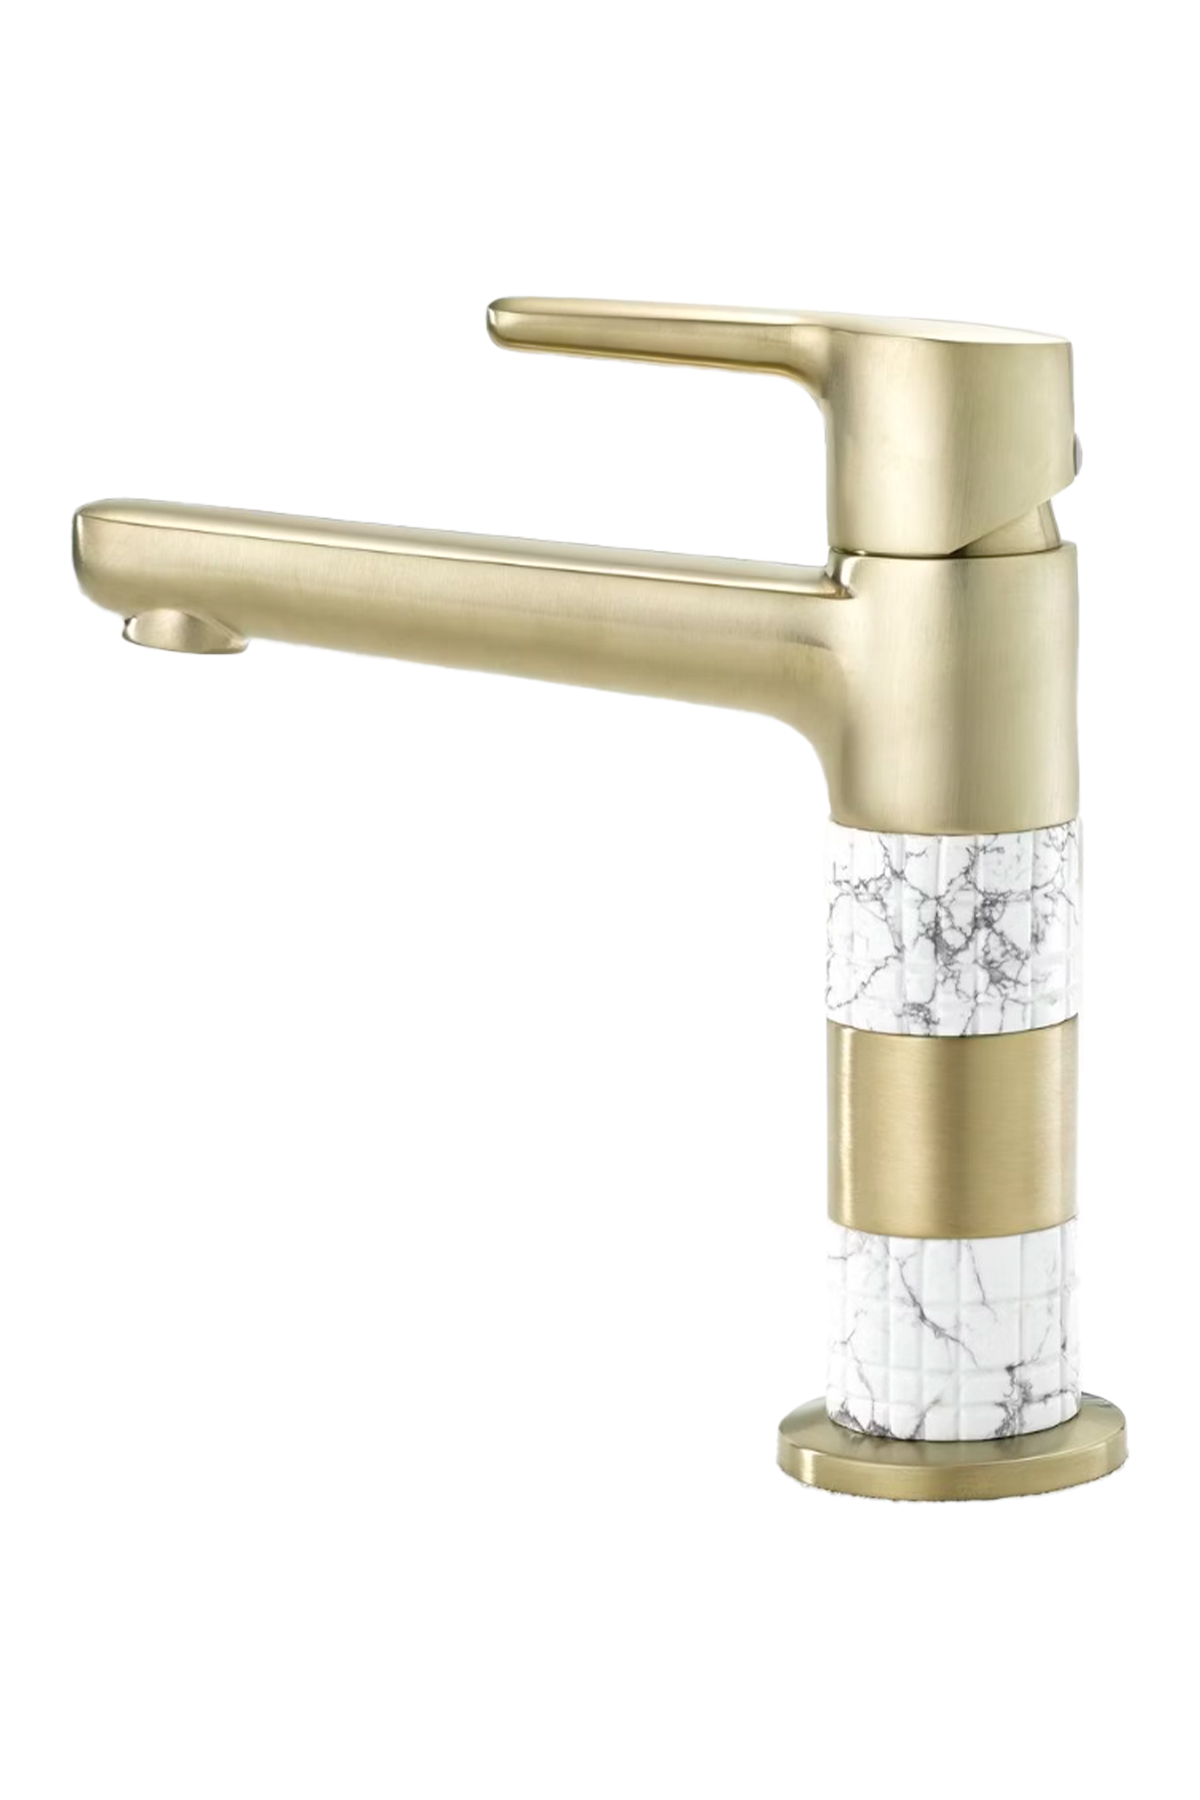 THG Paris Marble Faucet at Pierce Fine Hardware, Plumbing & Lighting